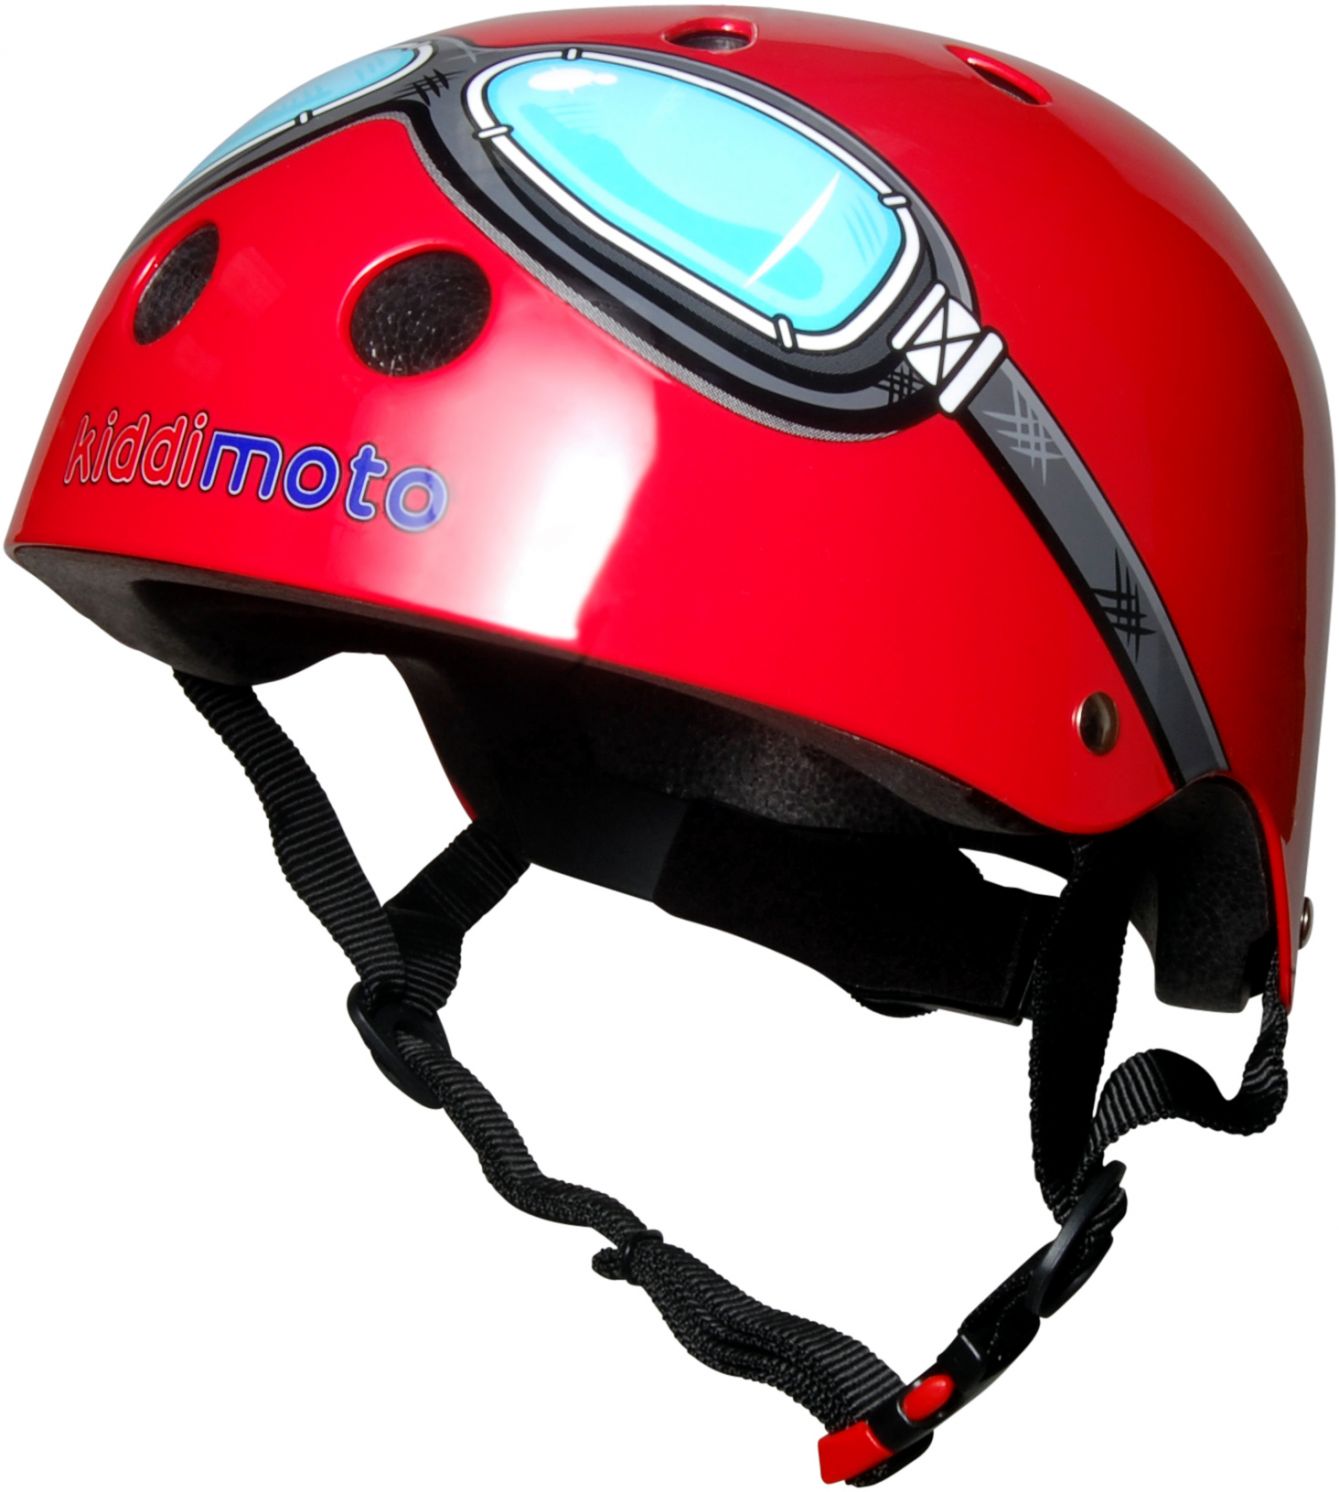 Шлем детский Kiddimoto очки пилота, красный, размер S 48-53см фото 